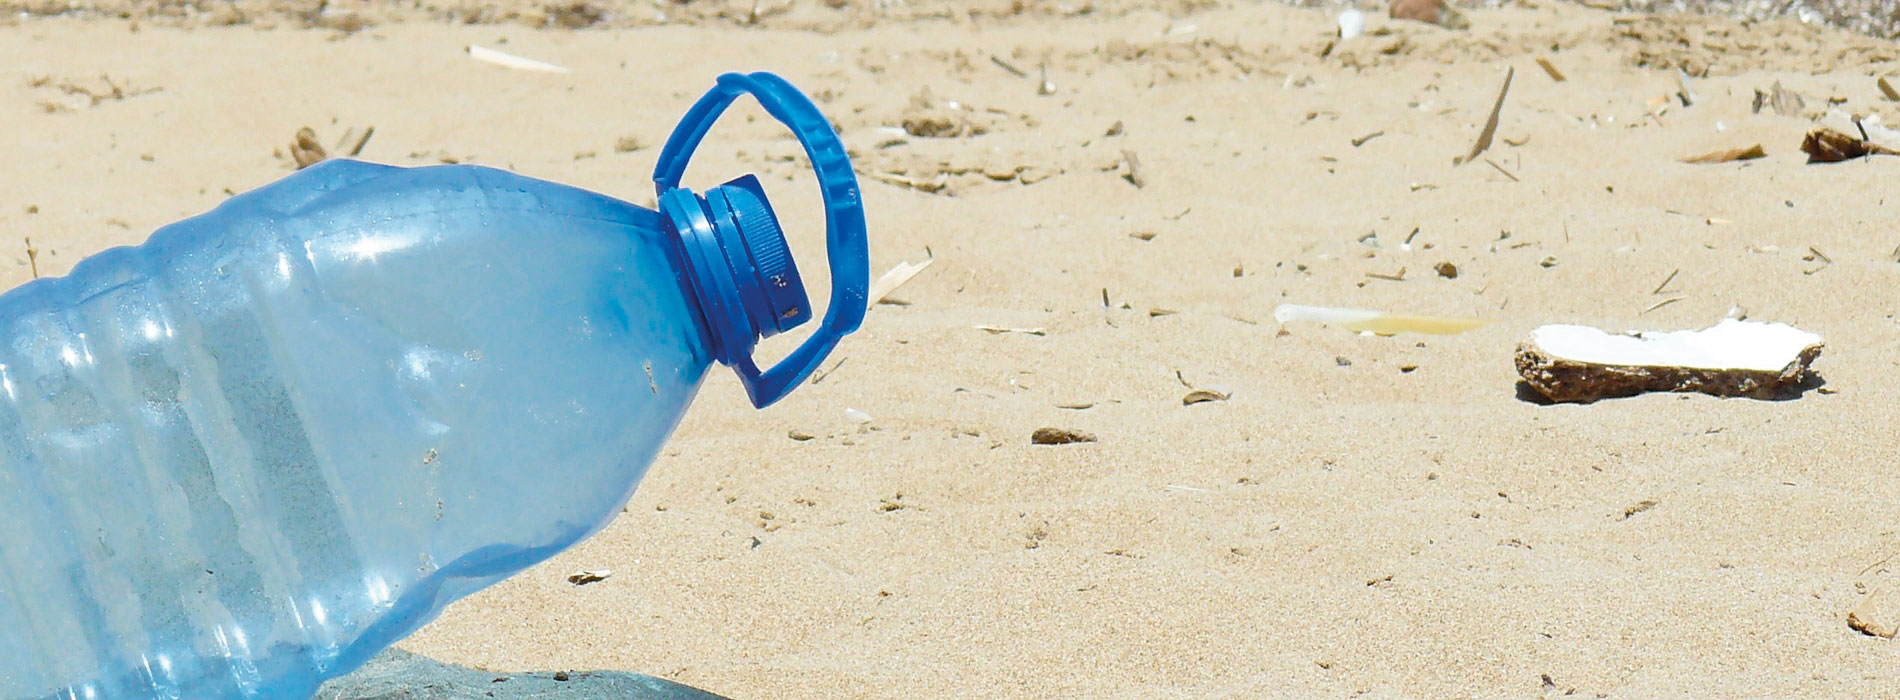 Plastik: eine ernsthafte Bedrohung für das Meer